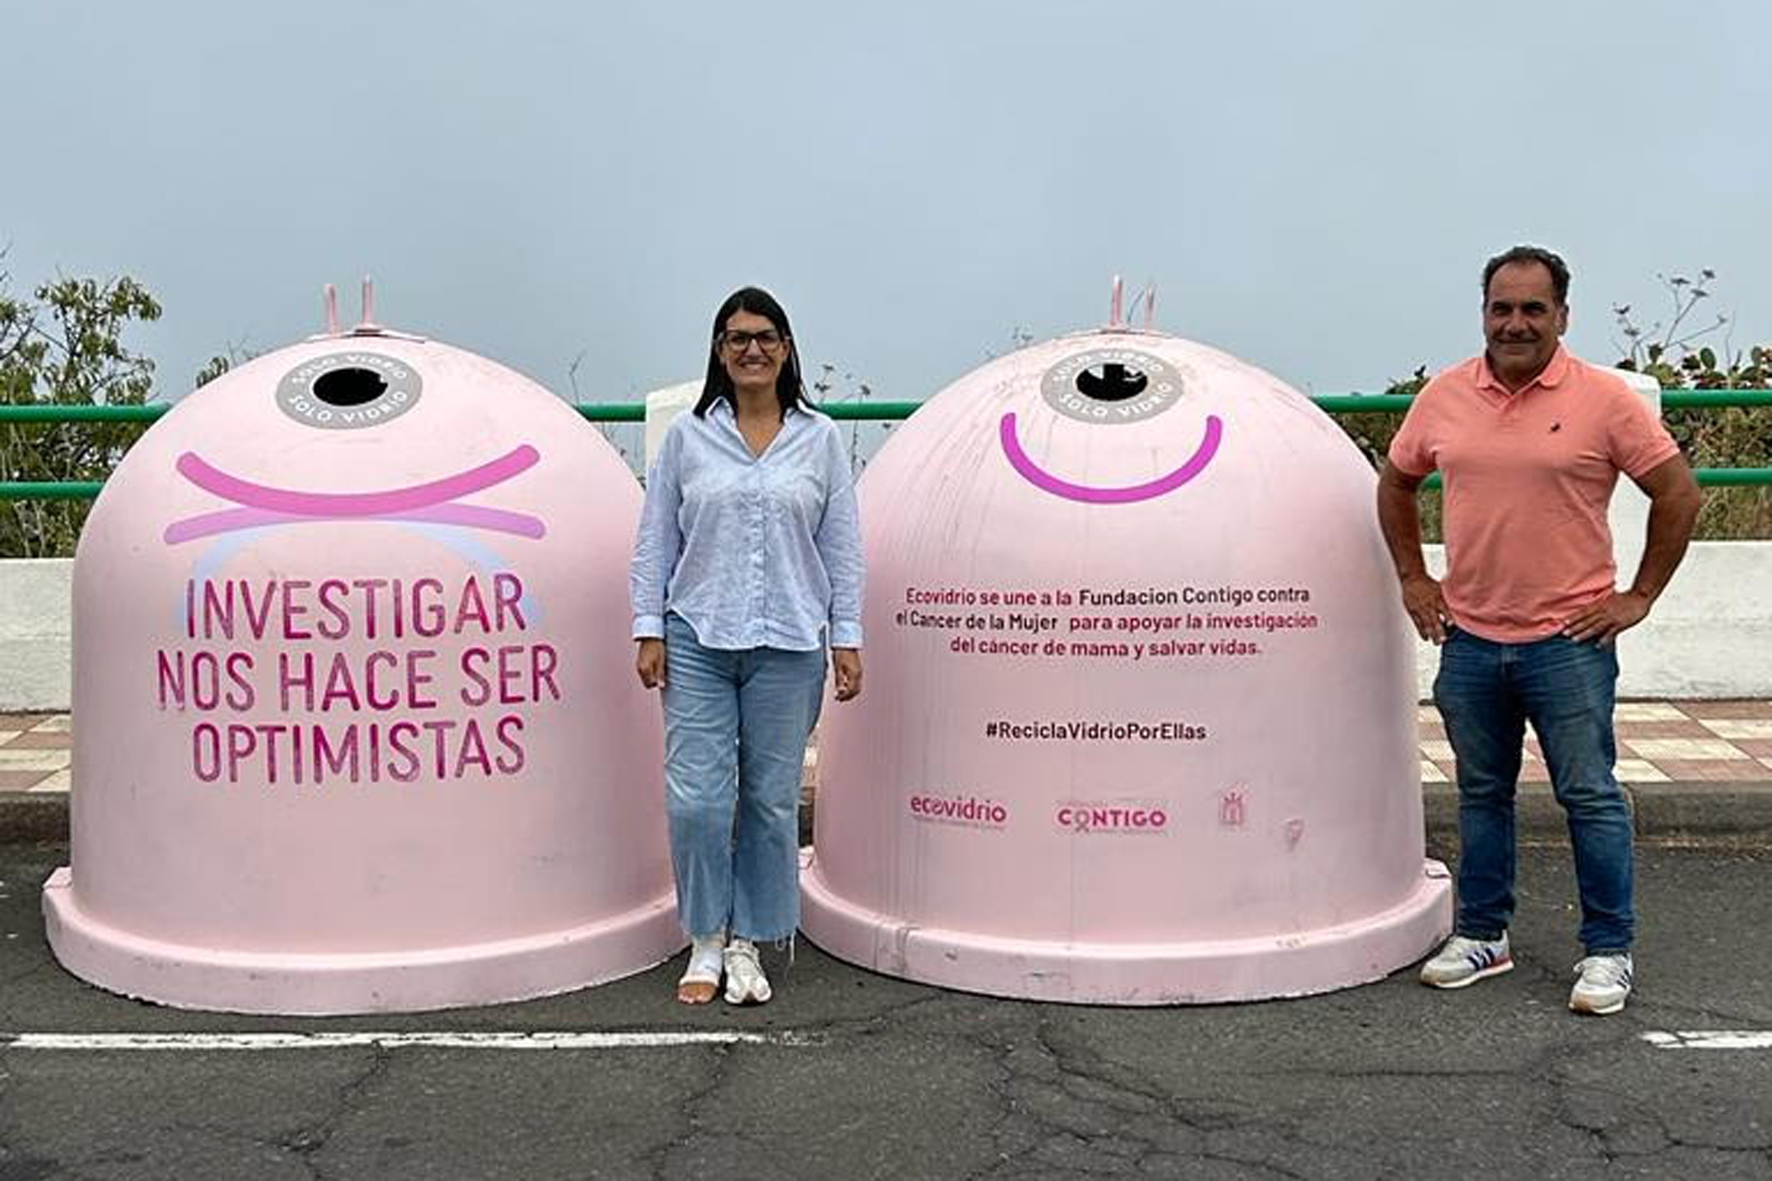 Ecovidrio, Fundación Contigo, Cabildo de El Hierro y Ayuntamiento de El Pinar promueven el primer equipo de fútbol femenino en pro de la investigación contra el cáncer de mama